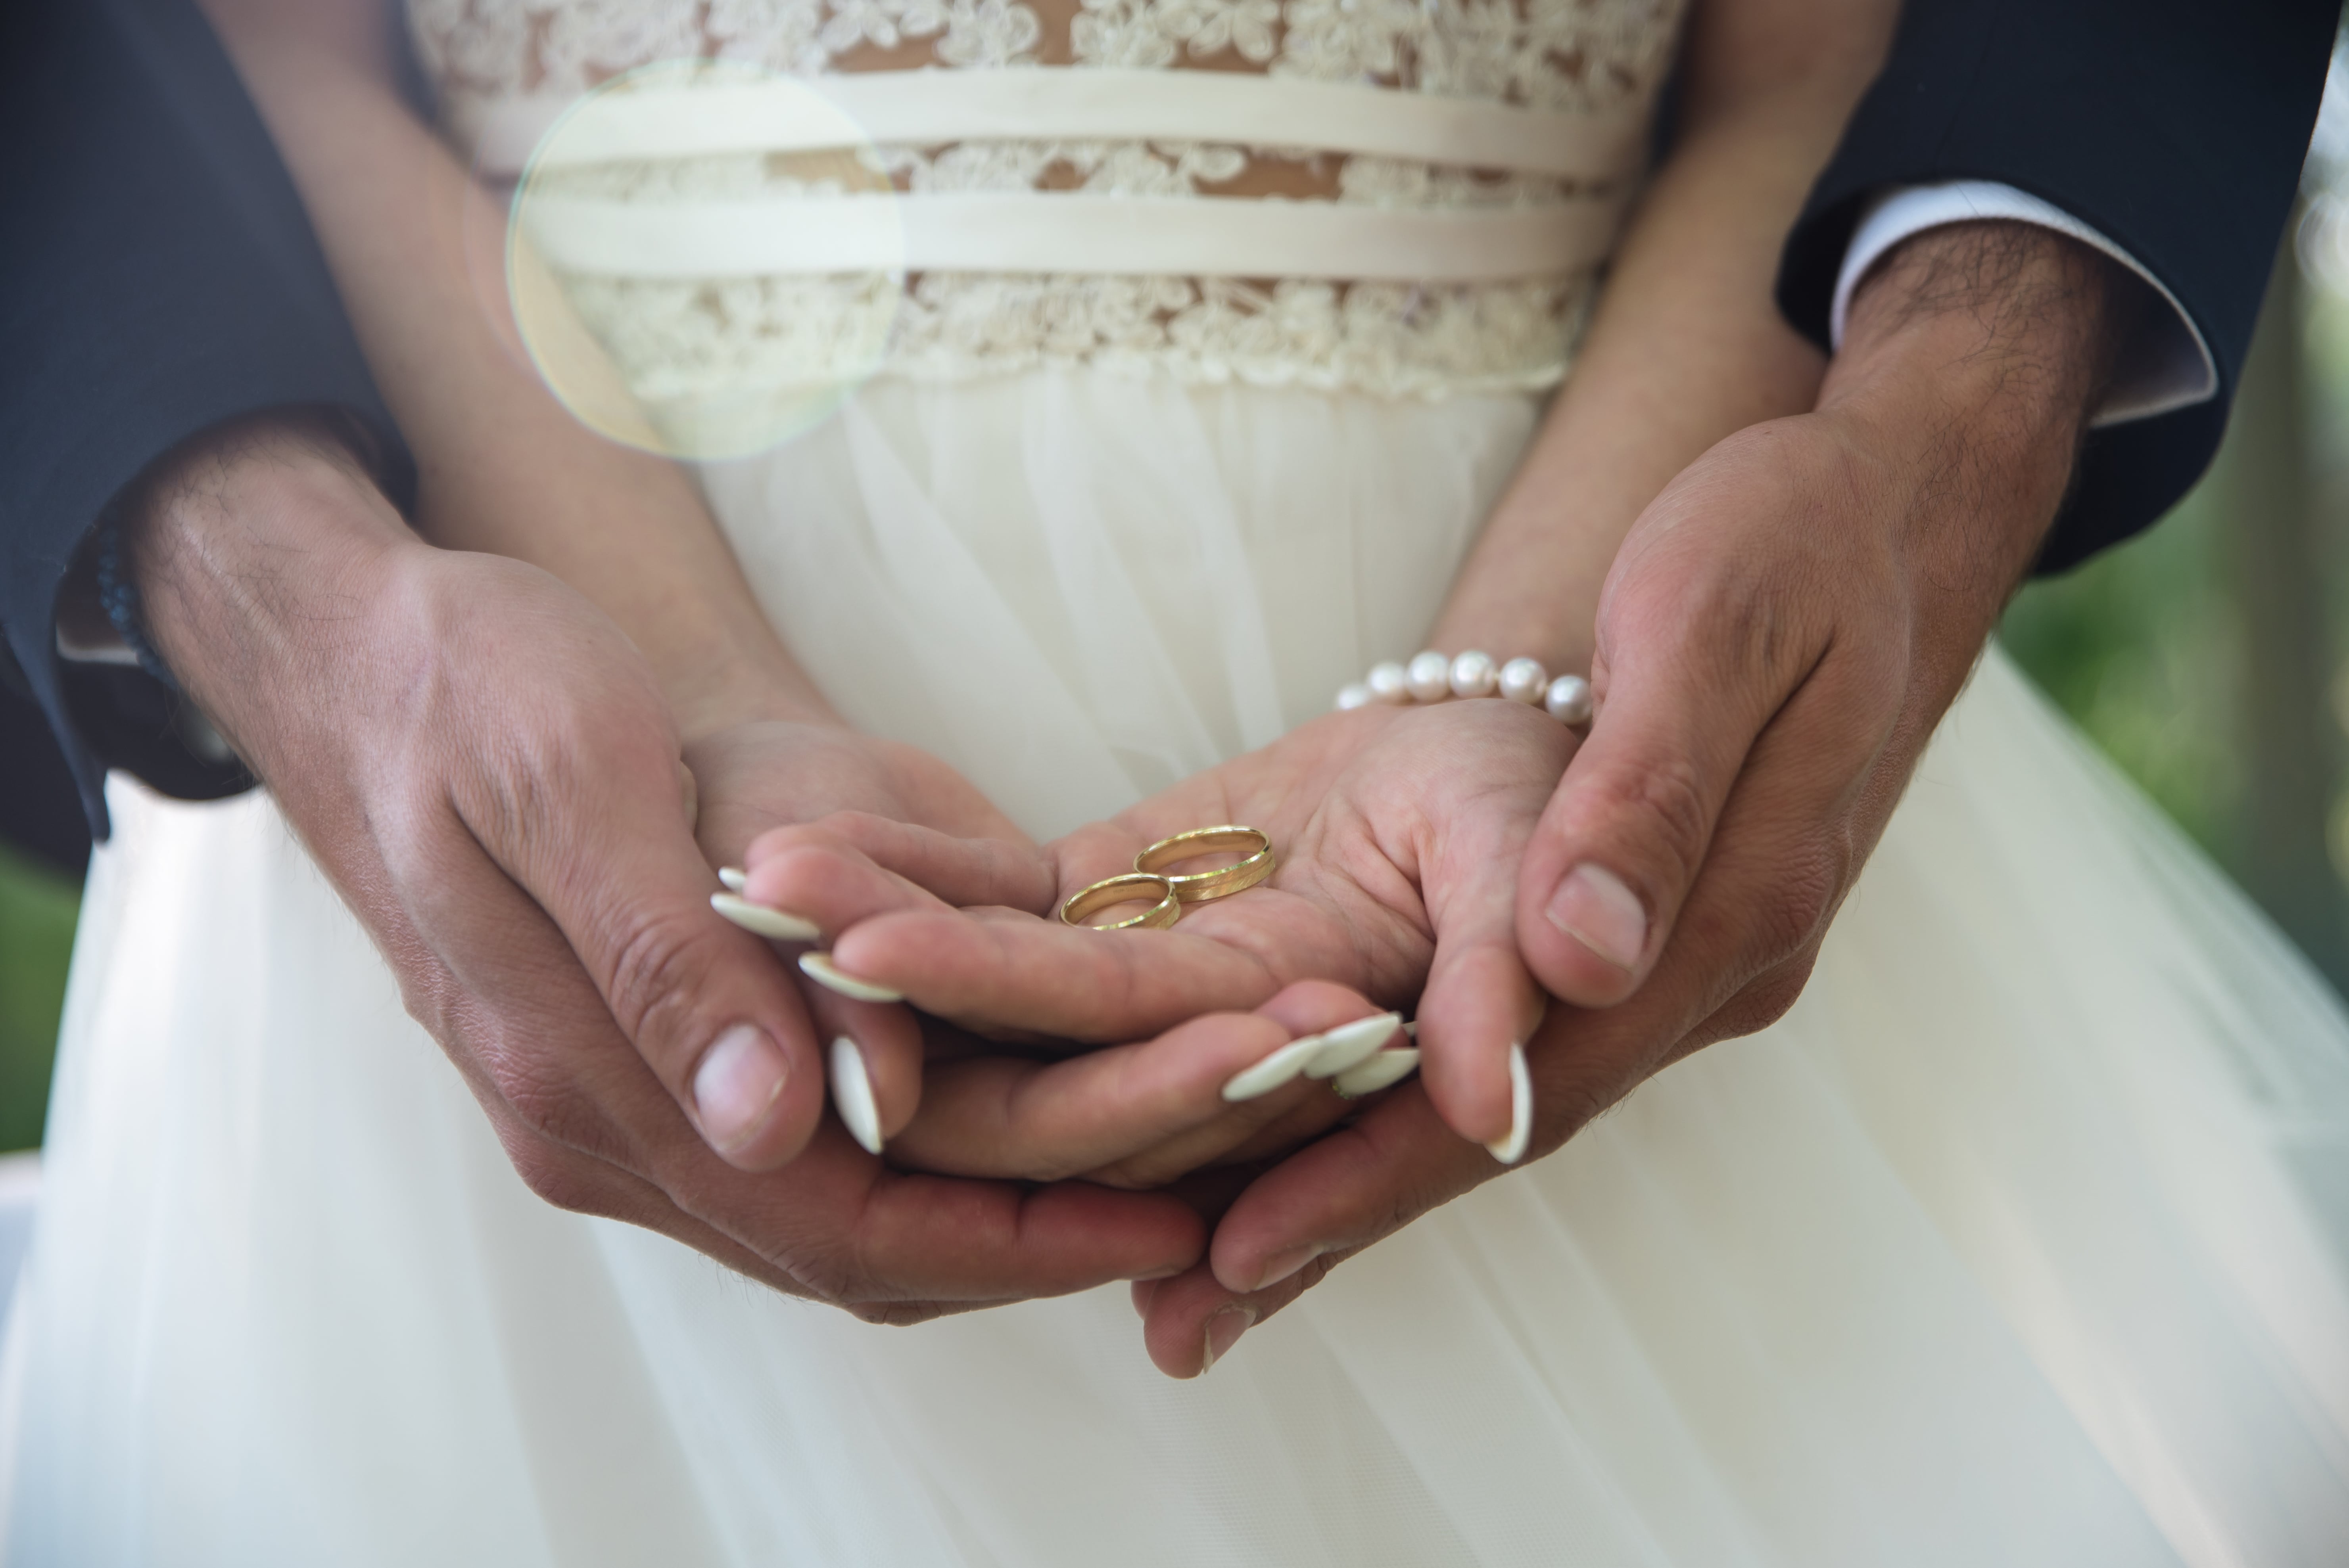 Картинка замужества. Брак. Обручальные кольца на руках жениха и невесты. Свадьба руки с кольцами. Фото обручальных колец на руках жениха и невесты.